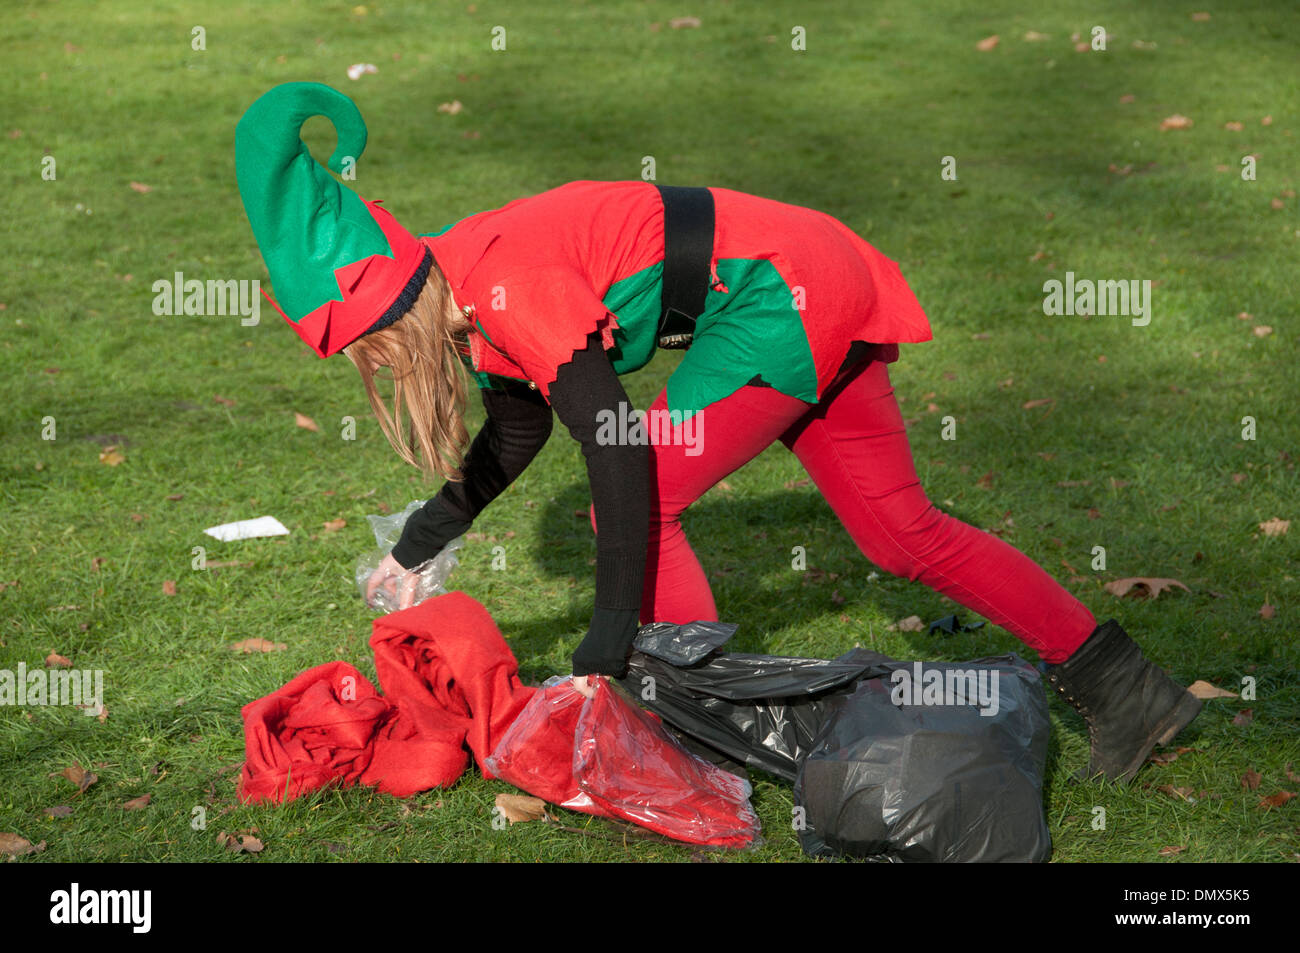 Santa Run, organisiert mit Menschen in Santa Anzügen zugunsten verschiedene Wohltätigkeitsorganisationen, von "Doitforcharity". Ein "Elf" sammelt Müll Stockfoto